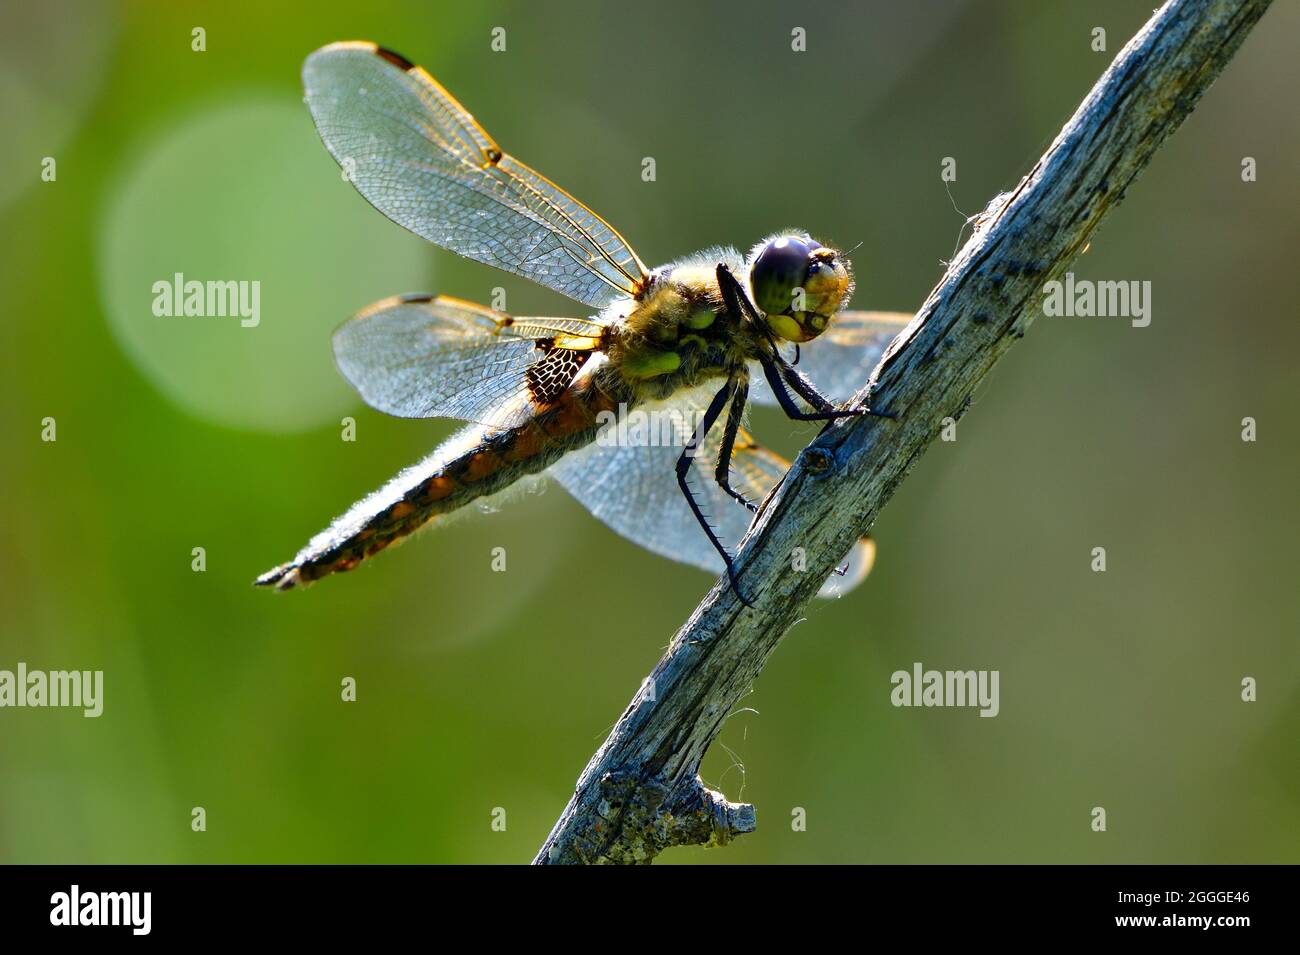 Un insecte libellule perché sur une branche morte Banque D'Images